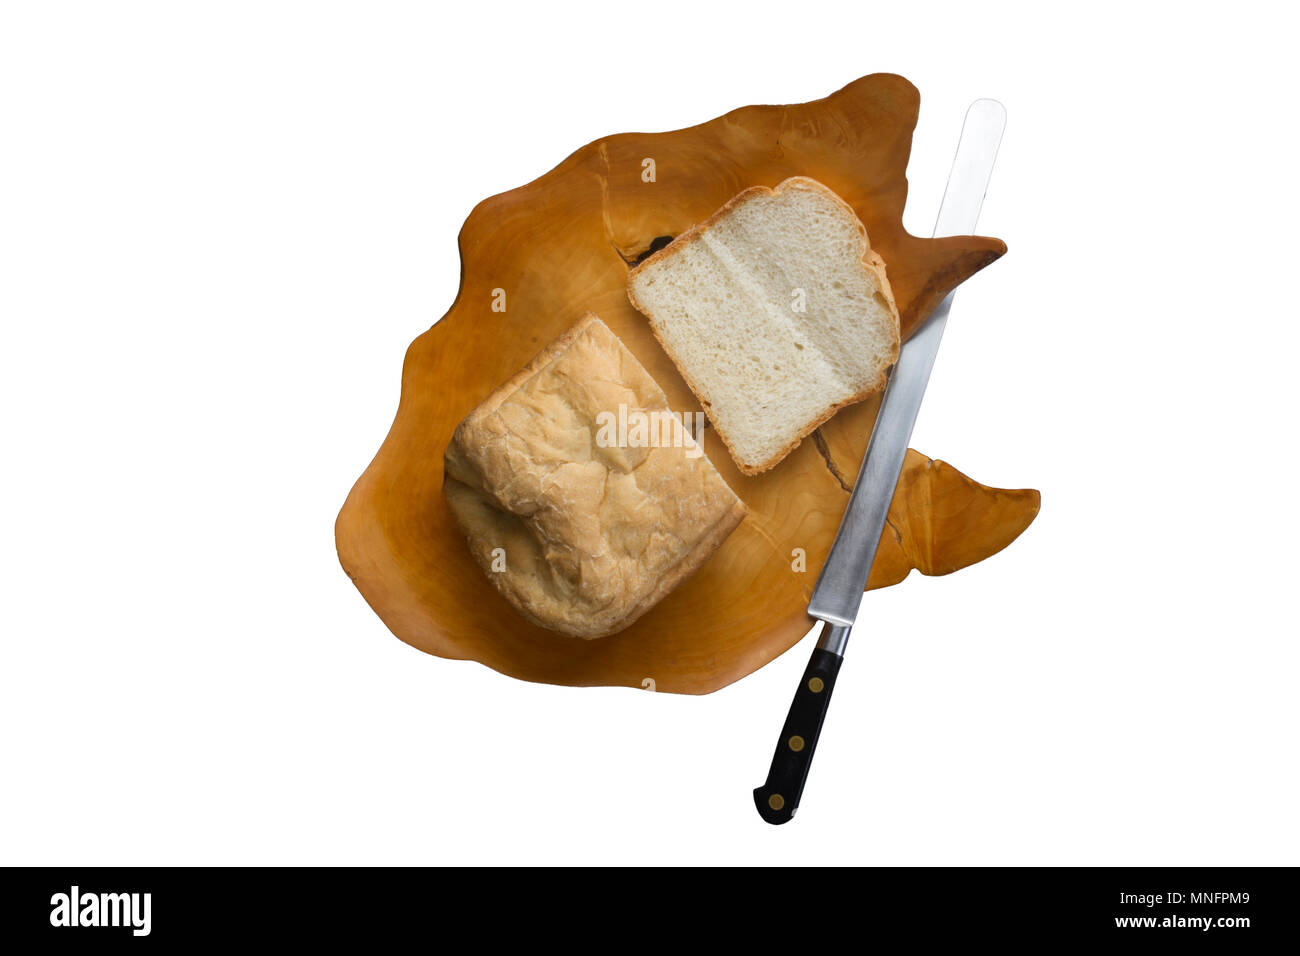 Tagliare il pane fresco in una ciotola di legno Foto Stock